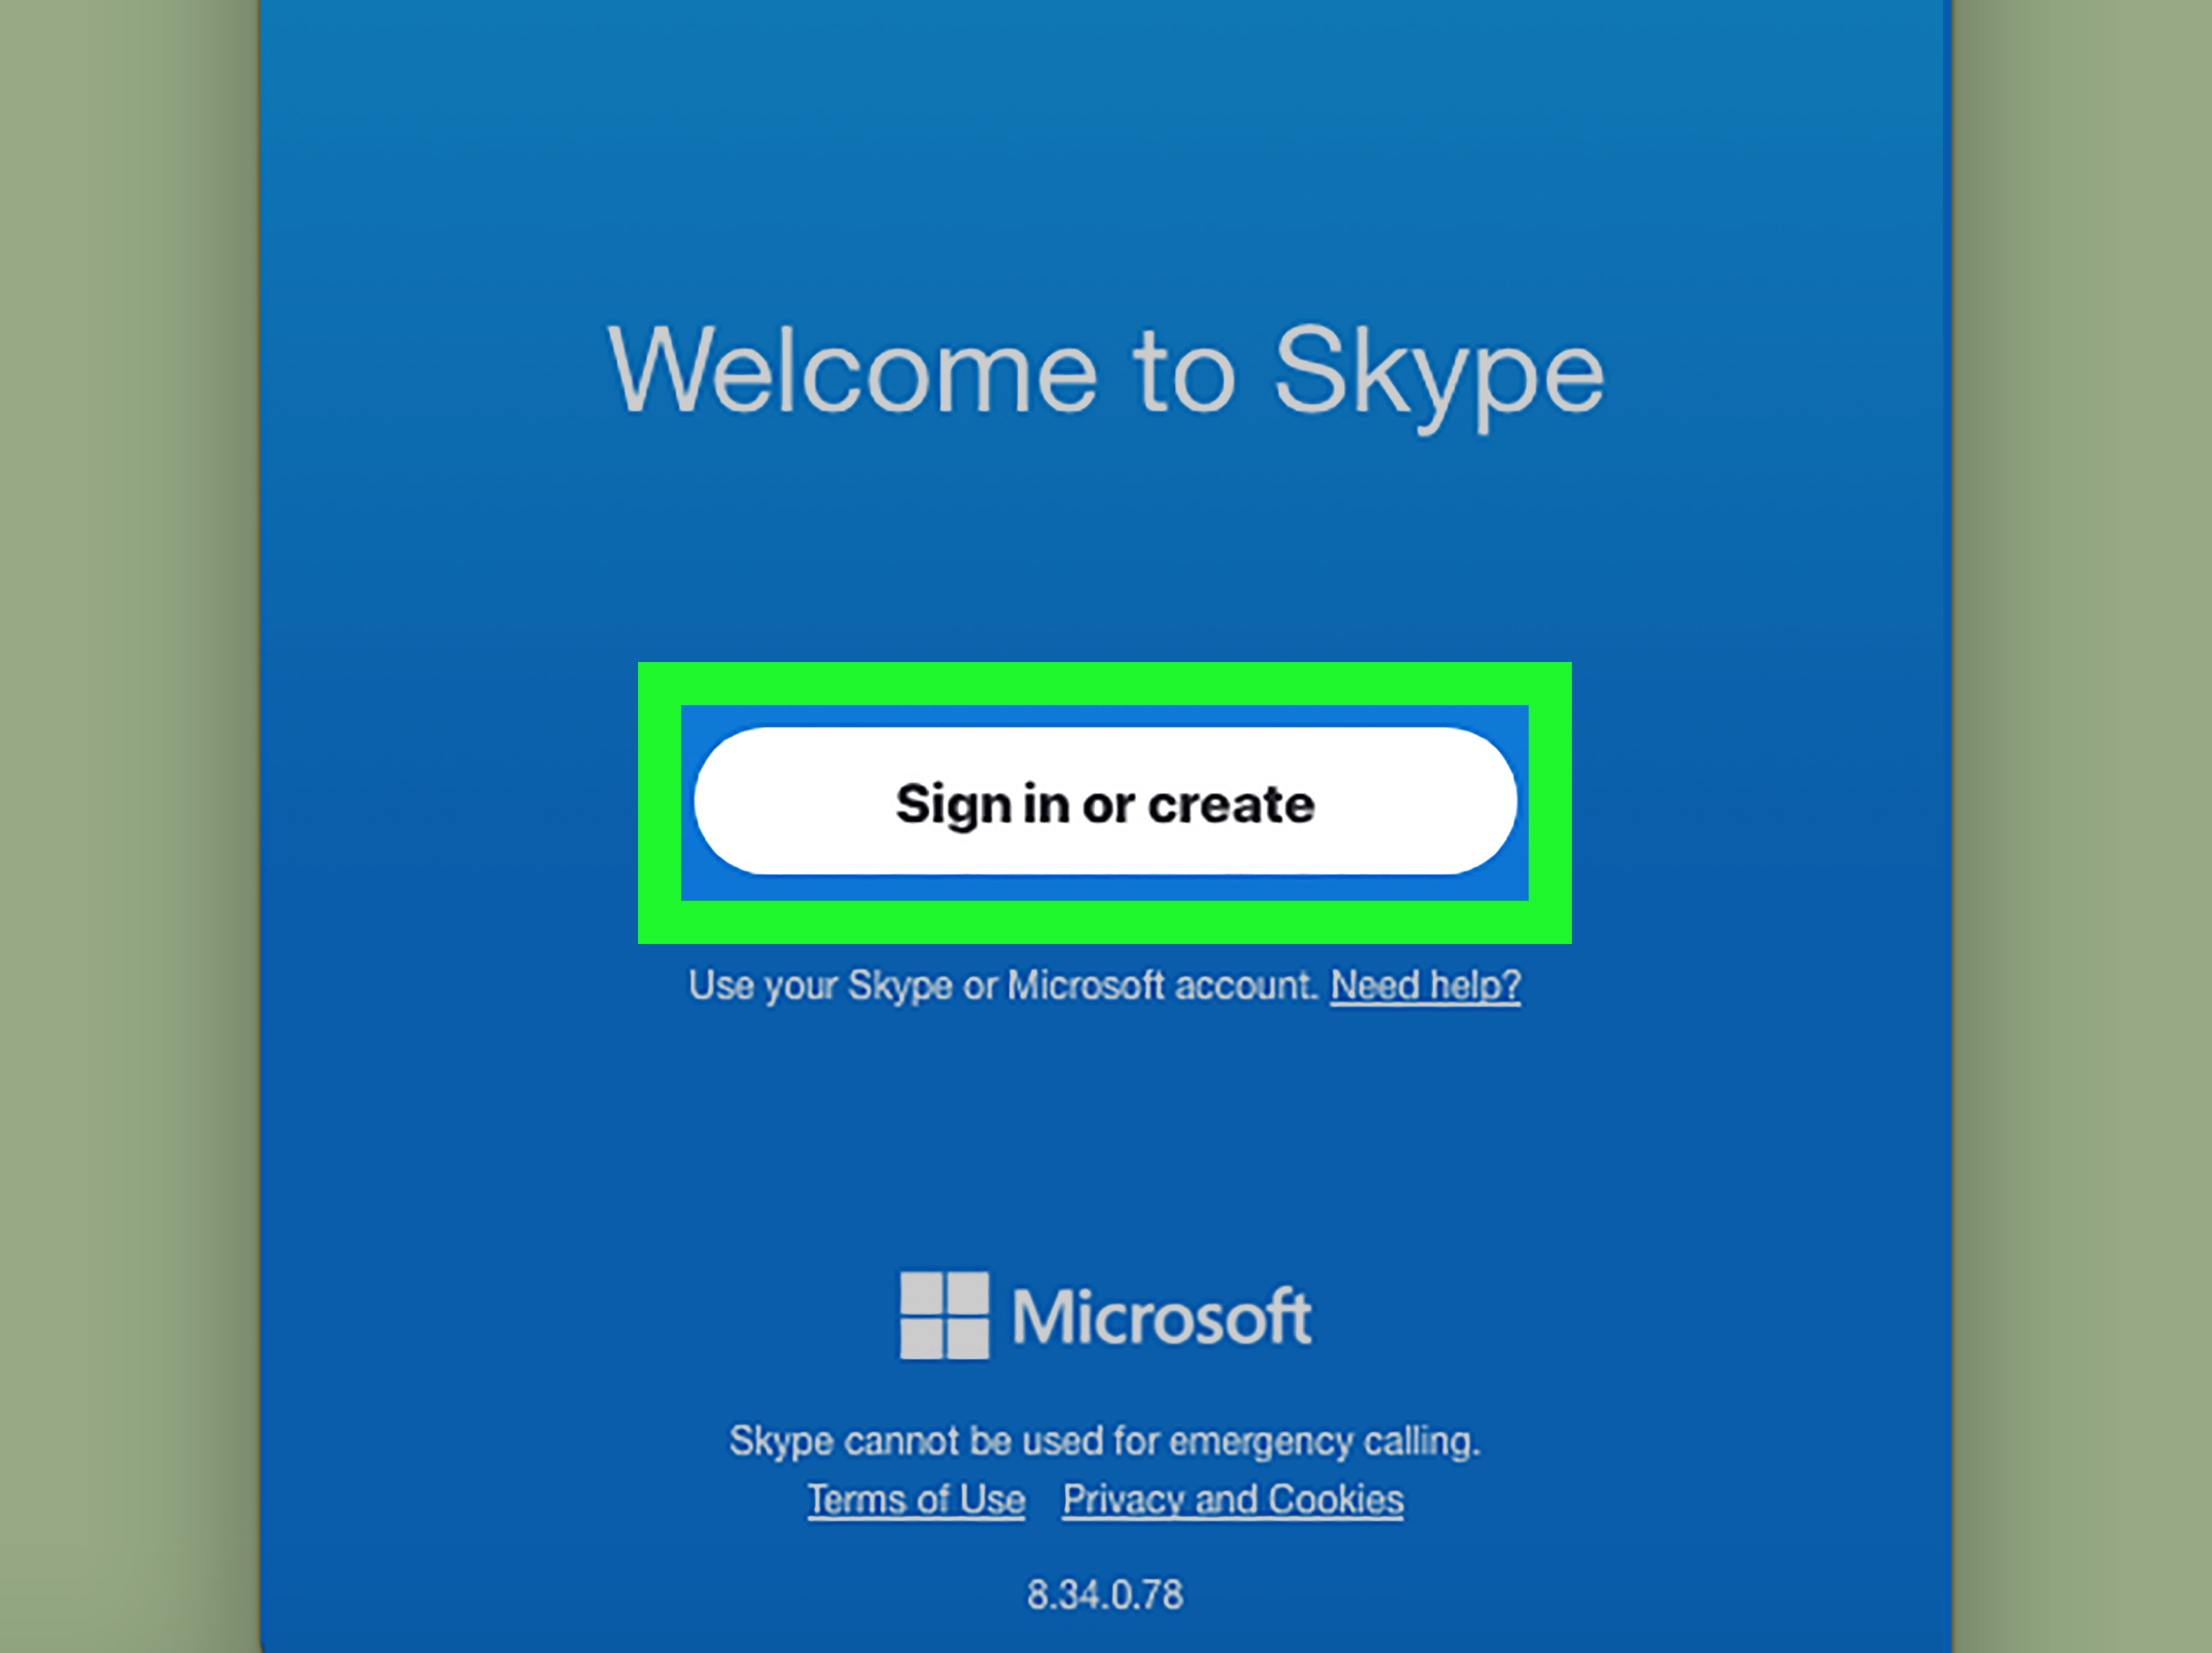 skype 6.9.0.106 download for mac